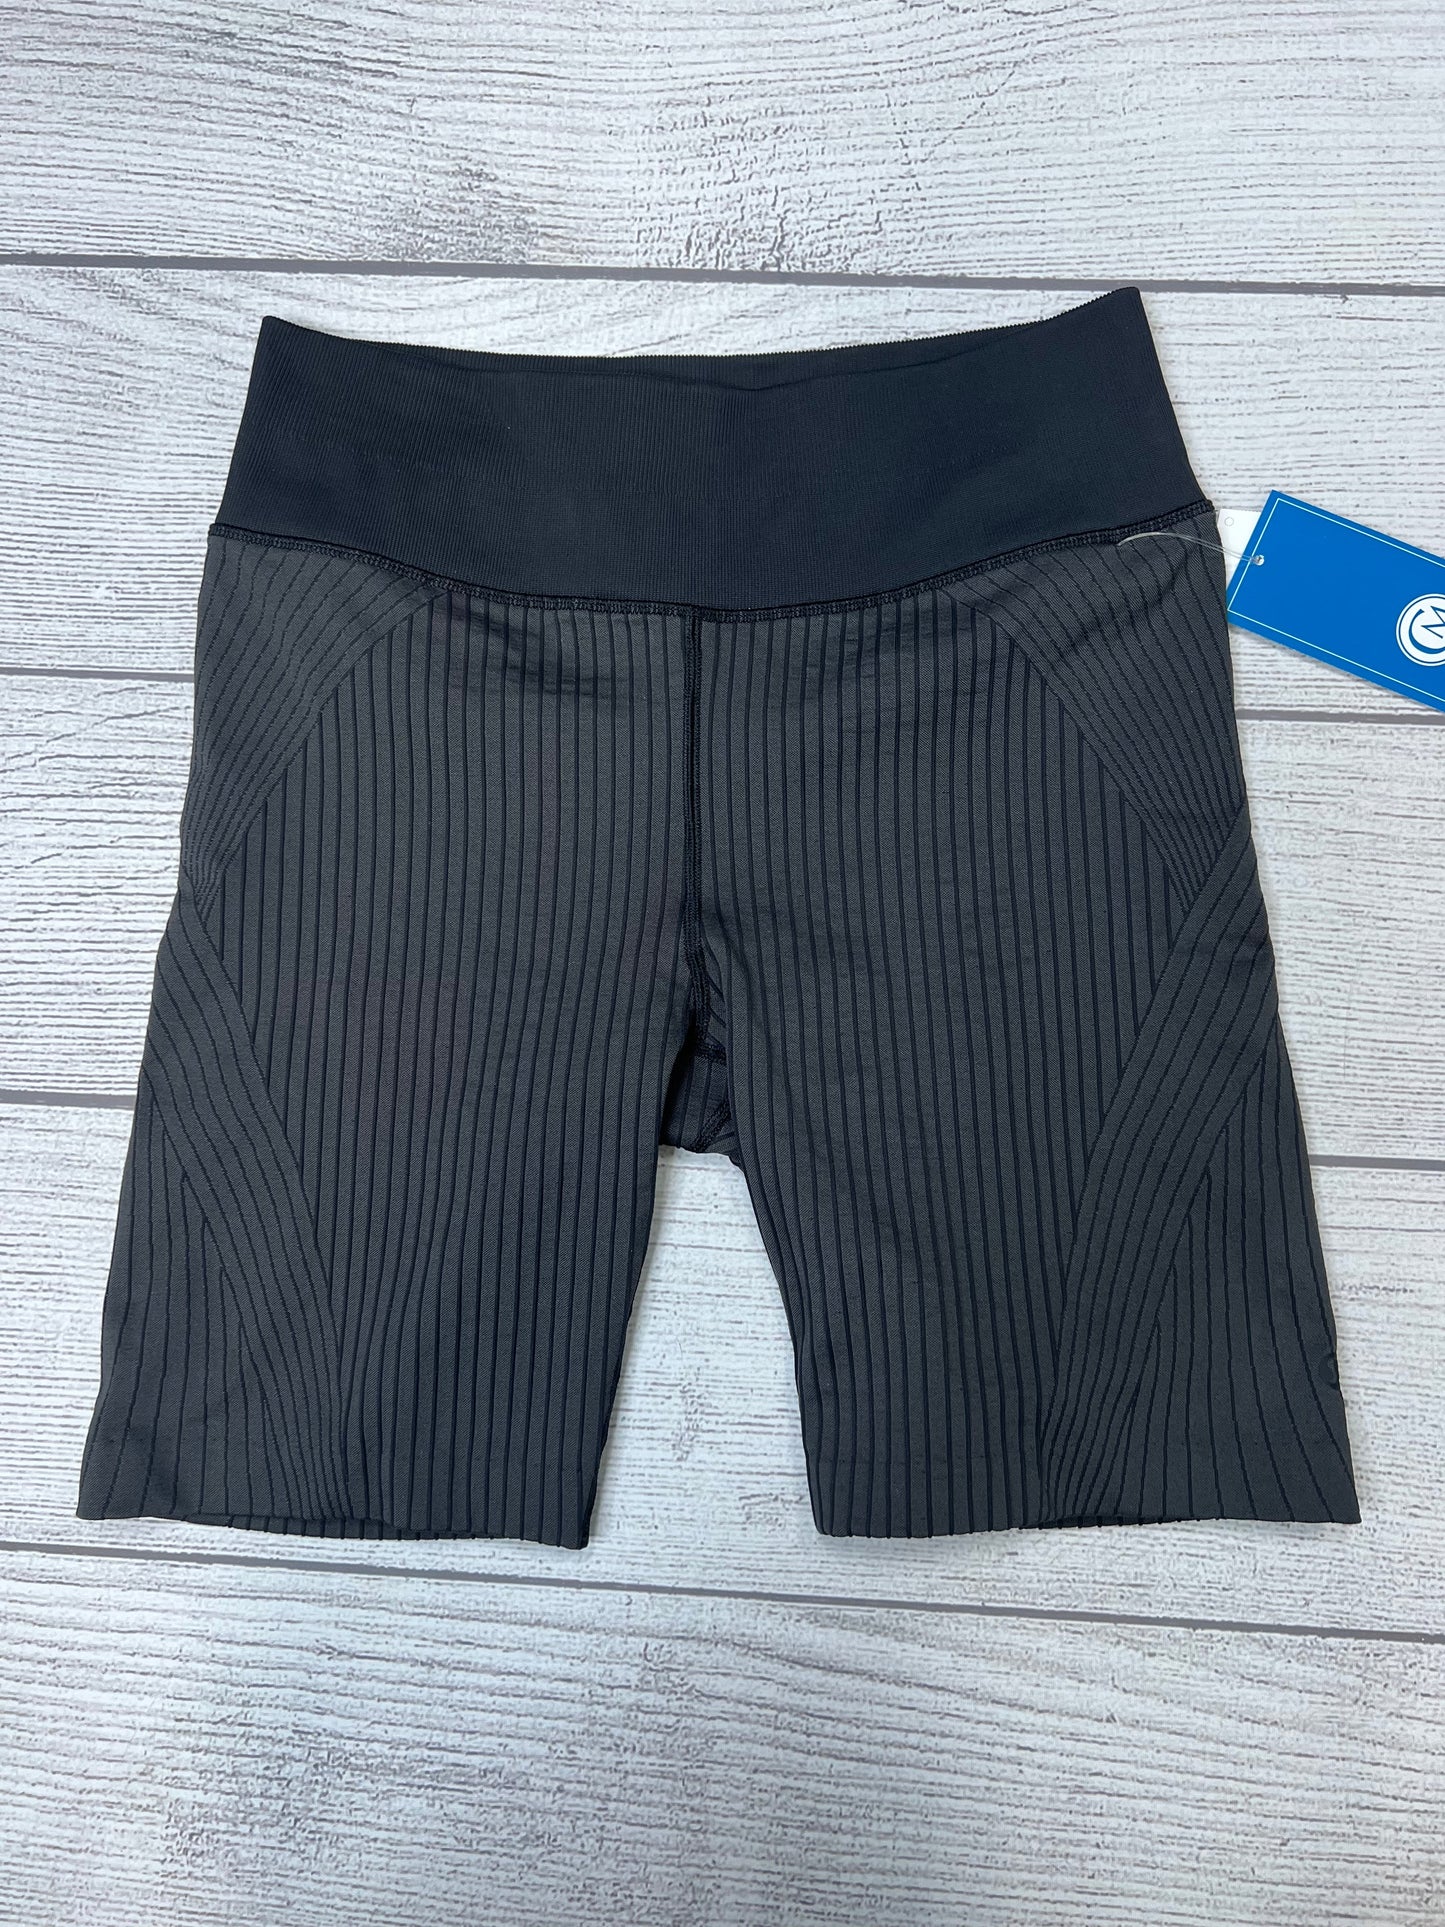 Grey Athletic Shorts Lululemon, Size M